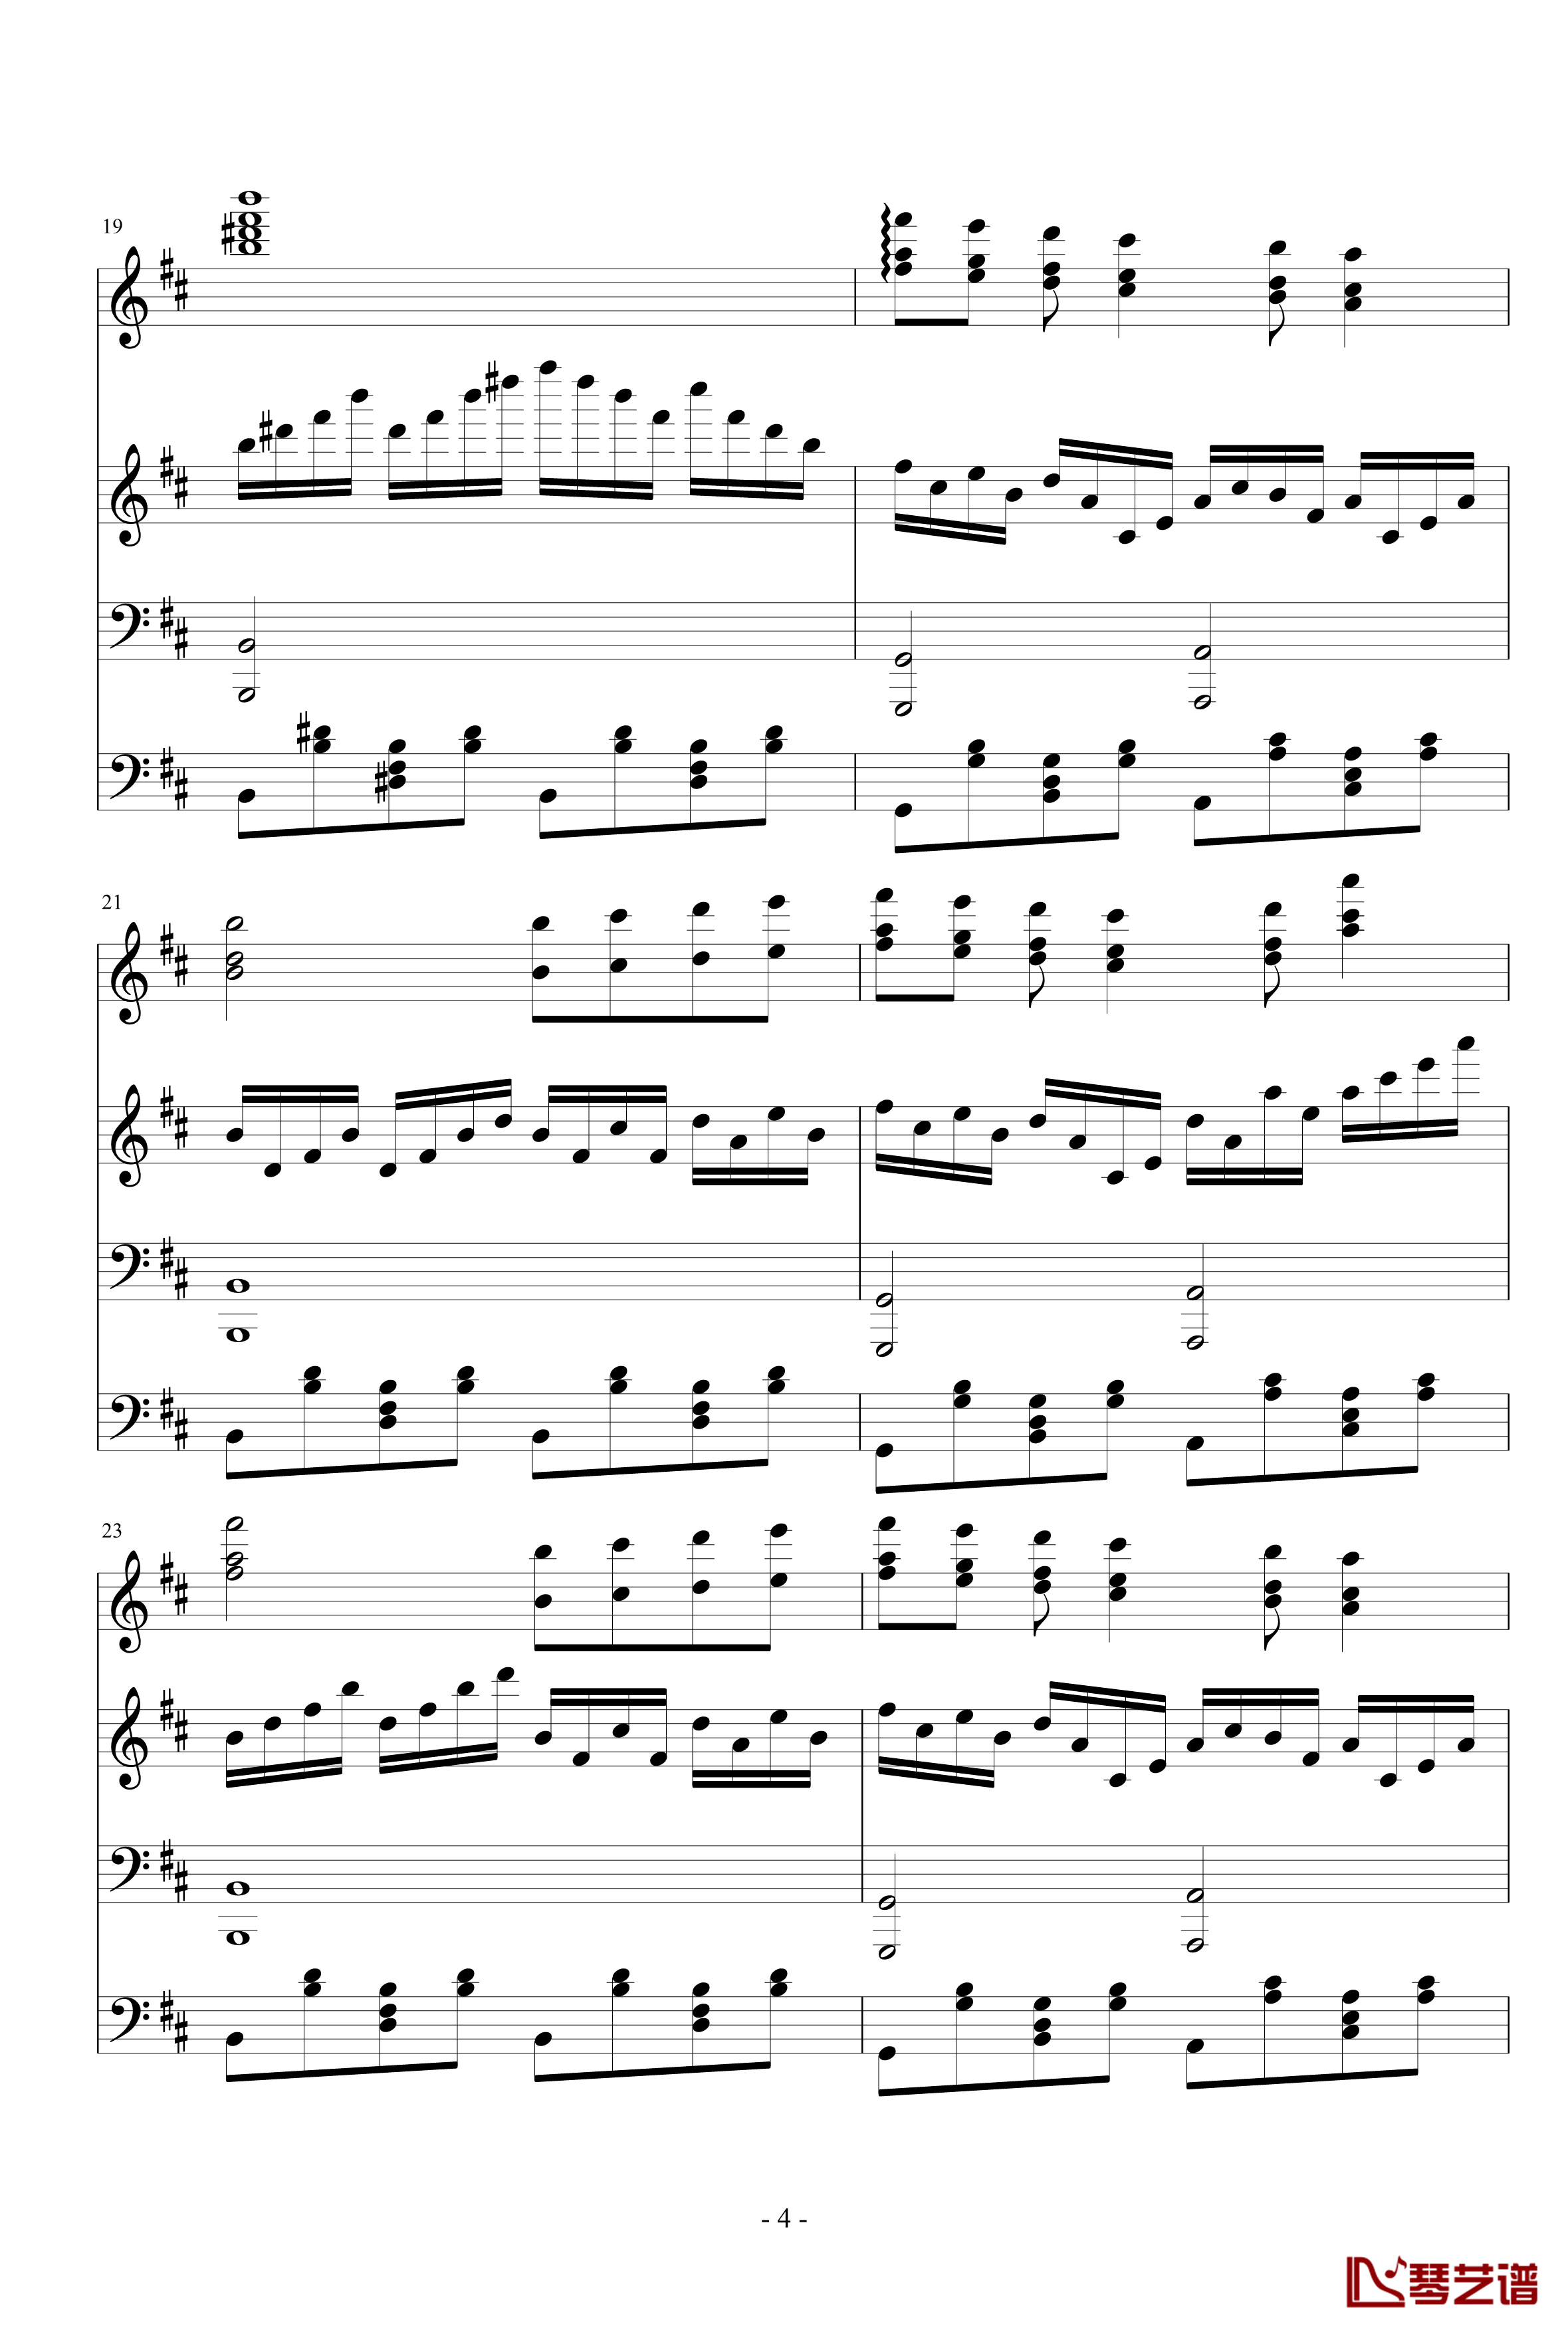 极品钢琴高手练习曲1钢琴谱-晴空之歌-瑜乐星4